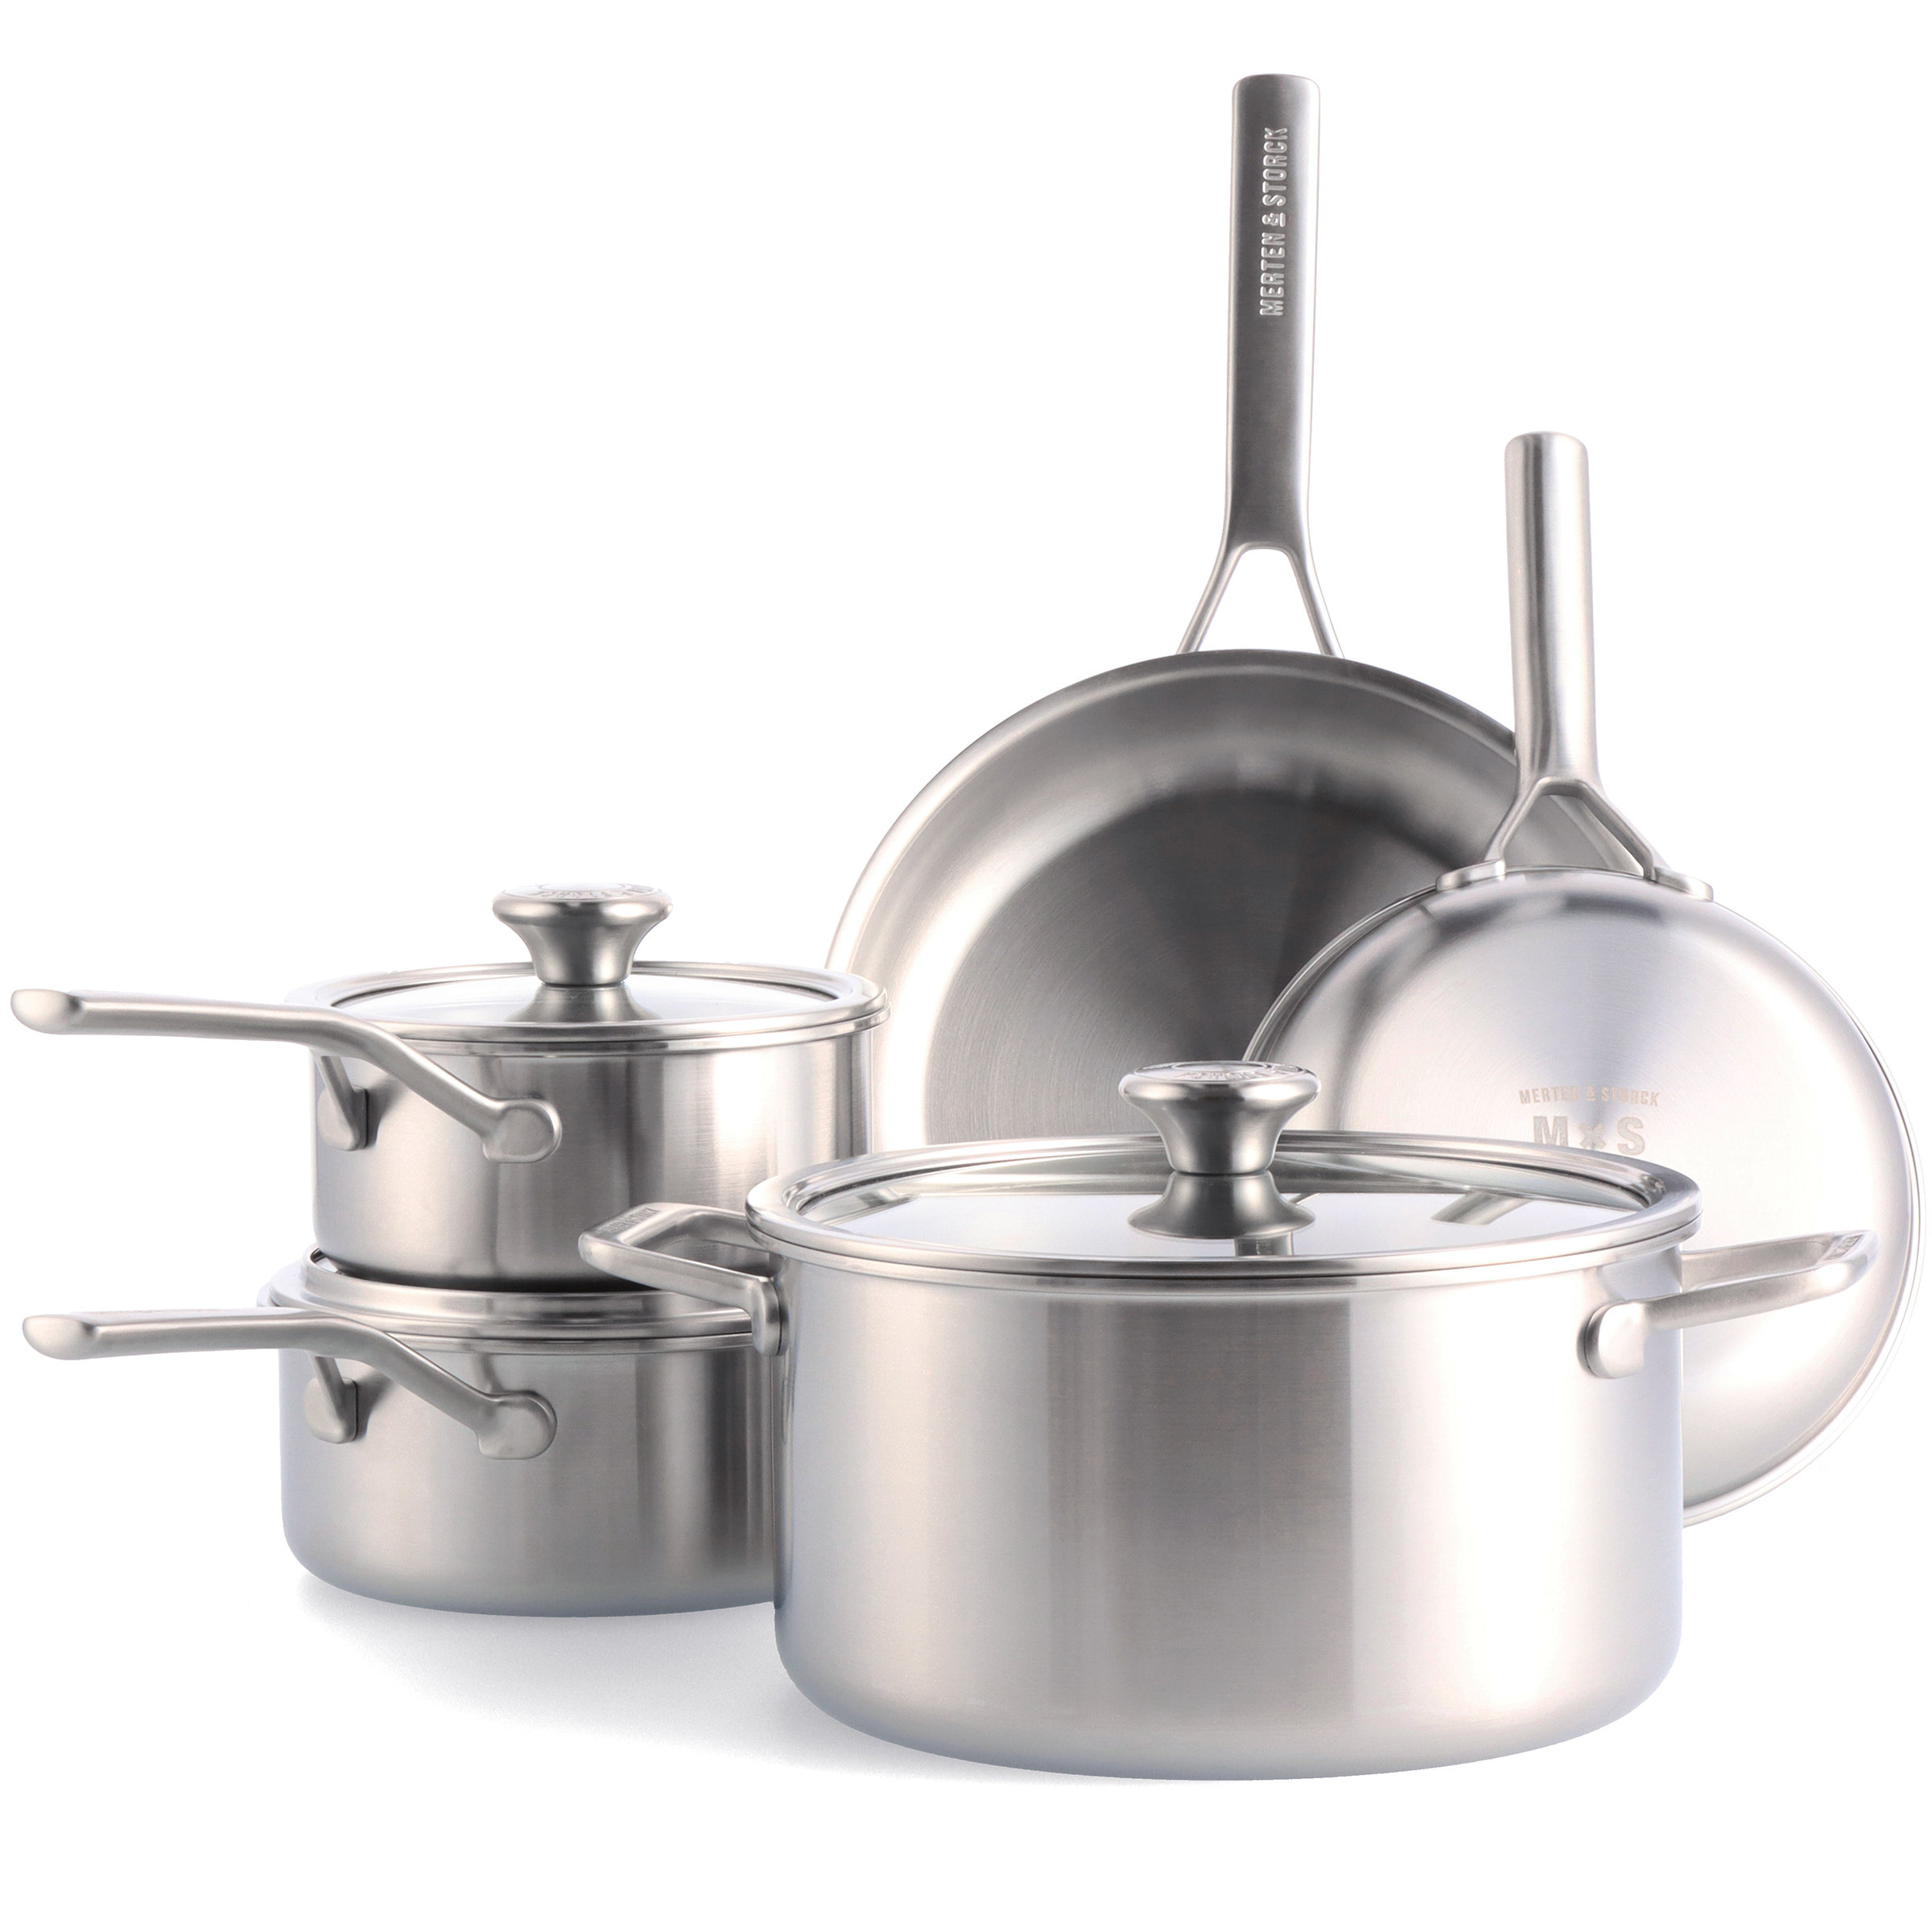 https://assets.wfcdn.com/im/15789361/compr-r85/1974/197471284/8-piece-non-stick-stainless-steel-cookware-set.jpg